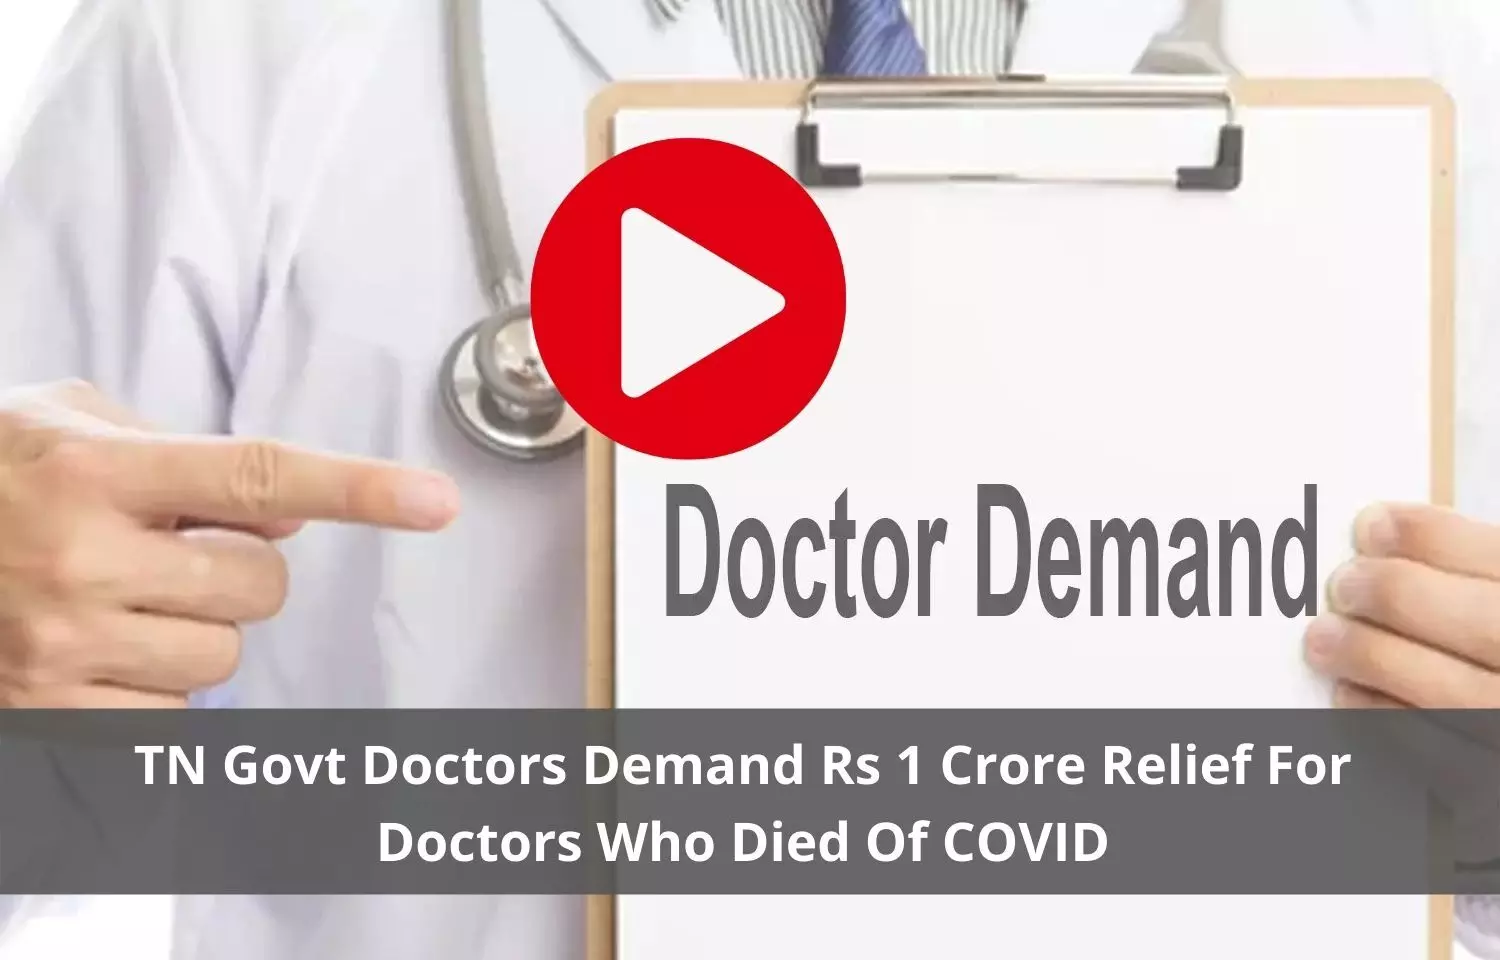 TN doctors threatens to go on strike if 1 crore relief demand for doctors not met